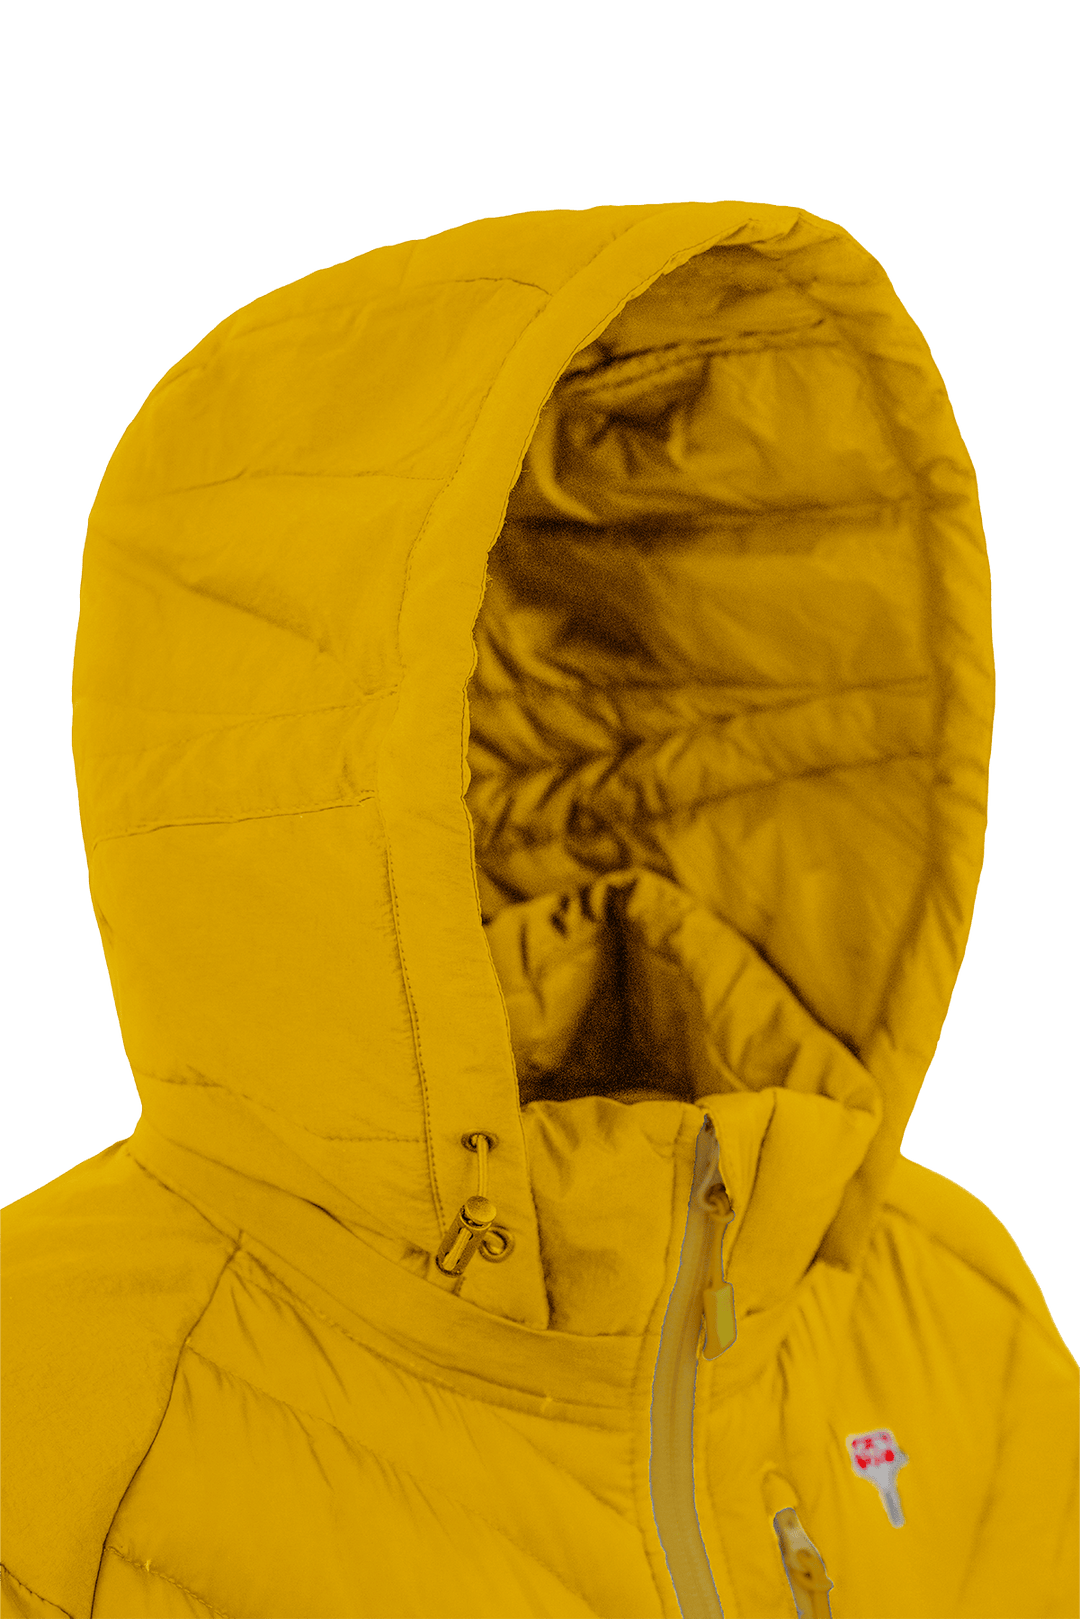 The Lightful DownWool Vest M | PINEAPPLE